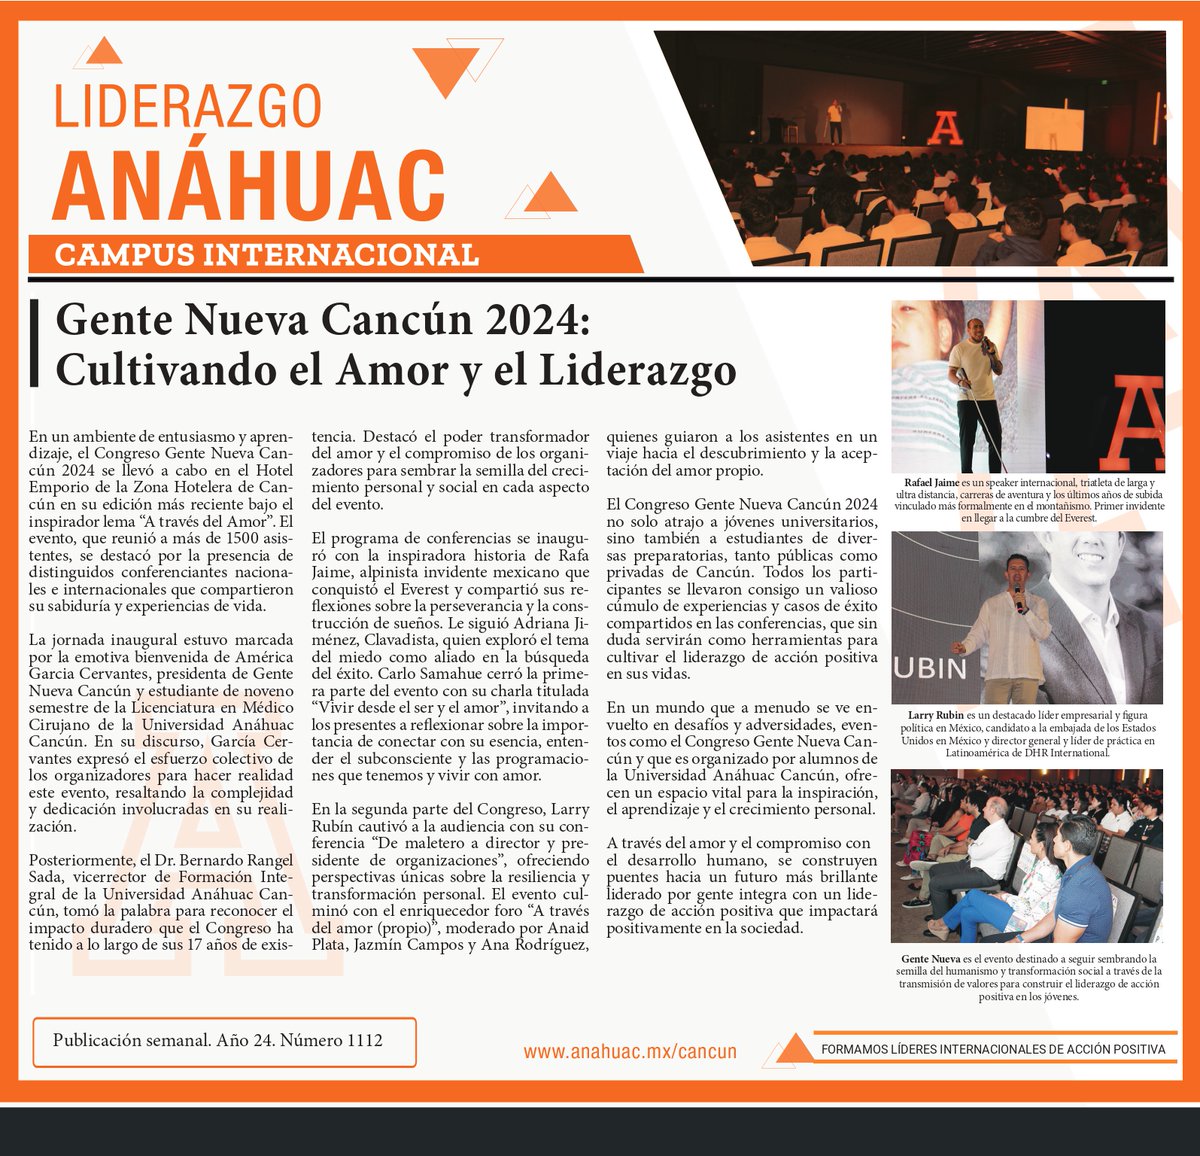 Les compartimos el Liderazgo Anáhuac publicado este domingo en el periódico 🗞️ Novedades de Q. Roo. bit.ly/3UGVoA5 🔸Somos Anáhuac, la Universidad Internacional de Cancún. #líderesinternacionalesdeacciónpositiva